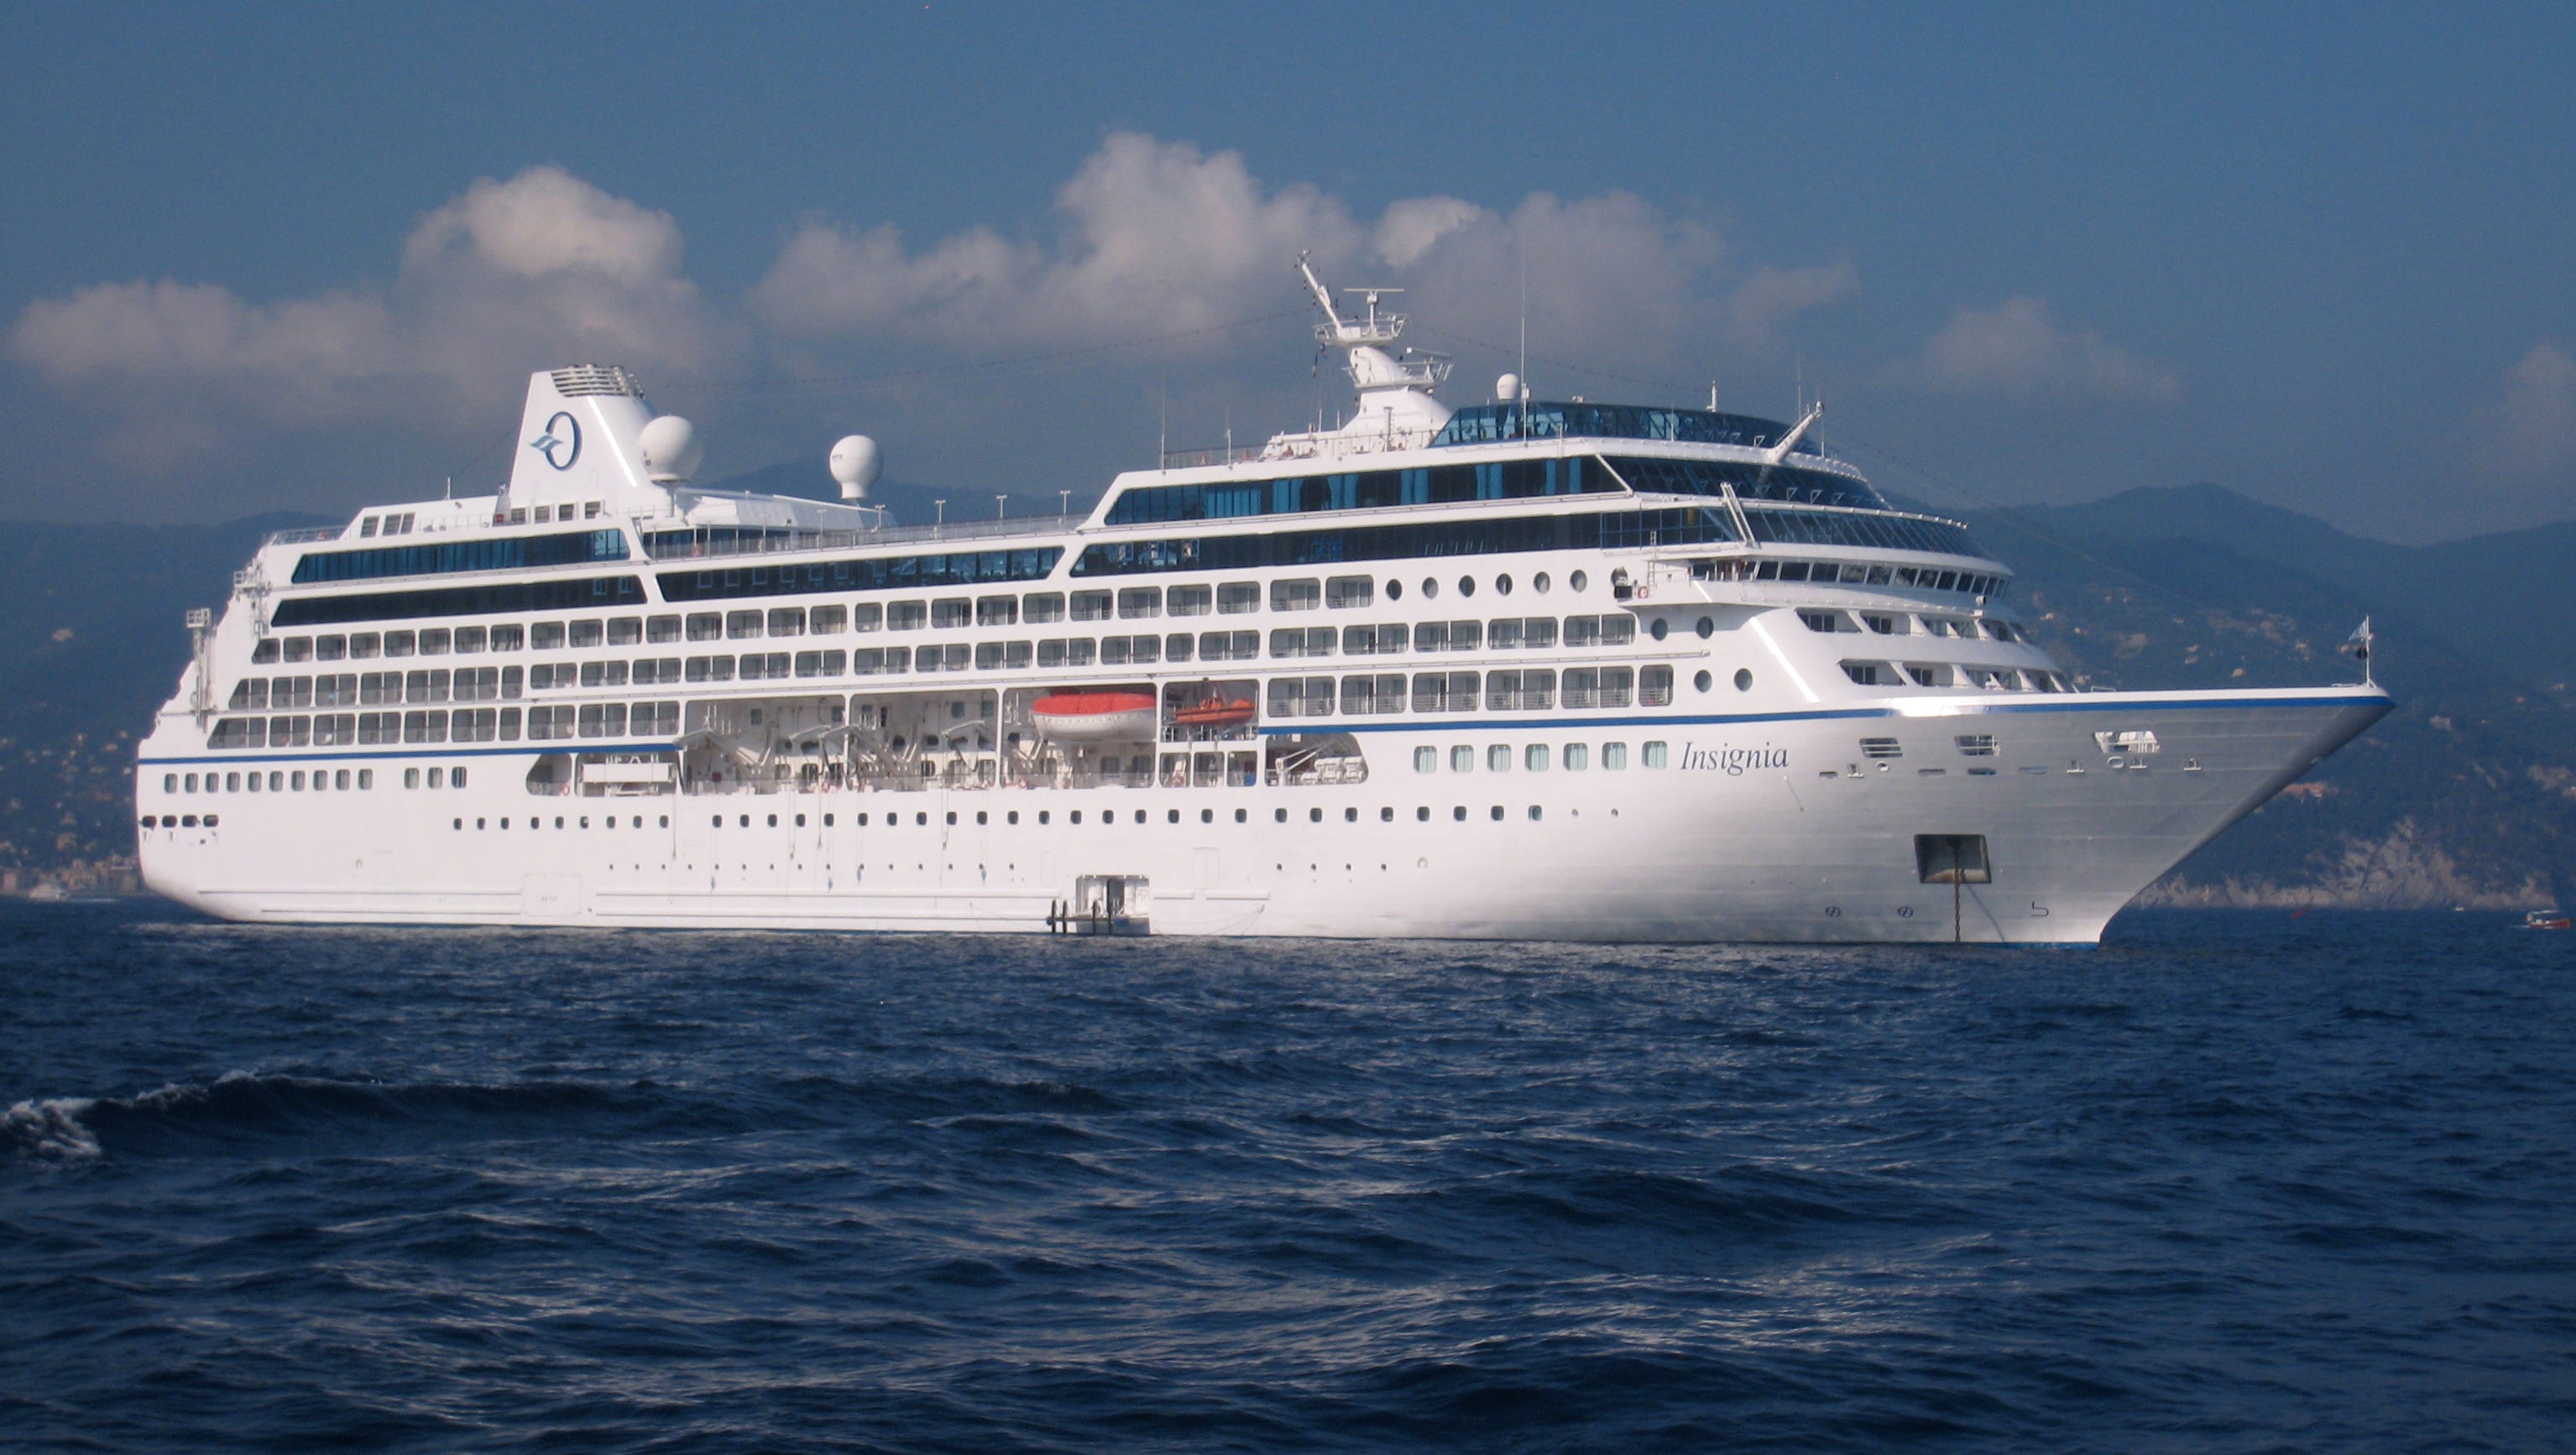 oceania cruises contact number australia